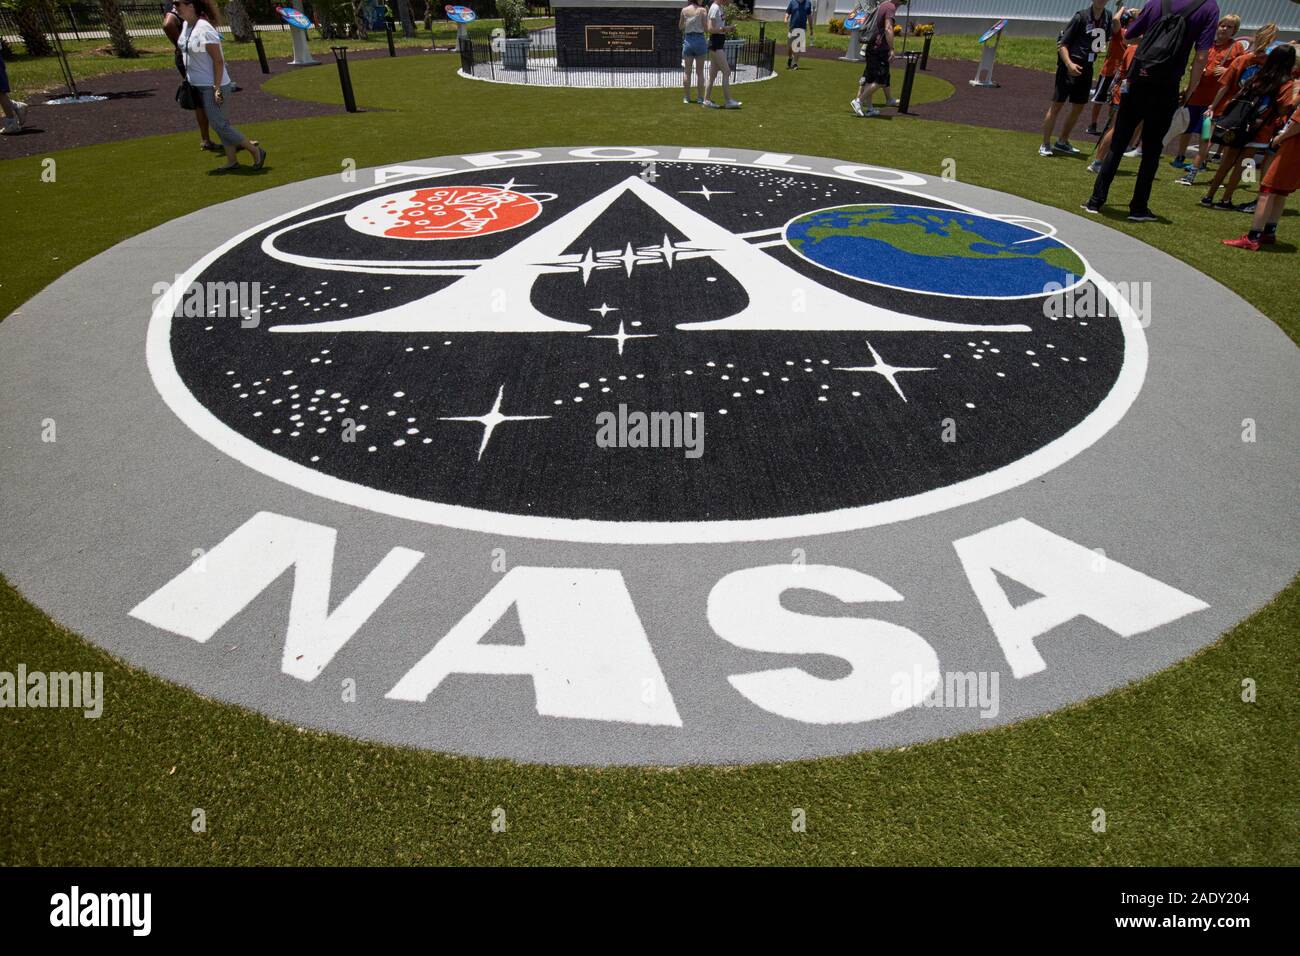 La Nasa missione Apollo logo in luna albero giardino Kennedy Space Center florida usa Foto Stock